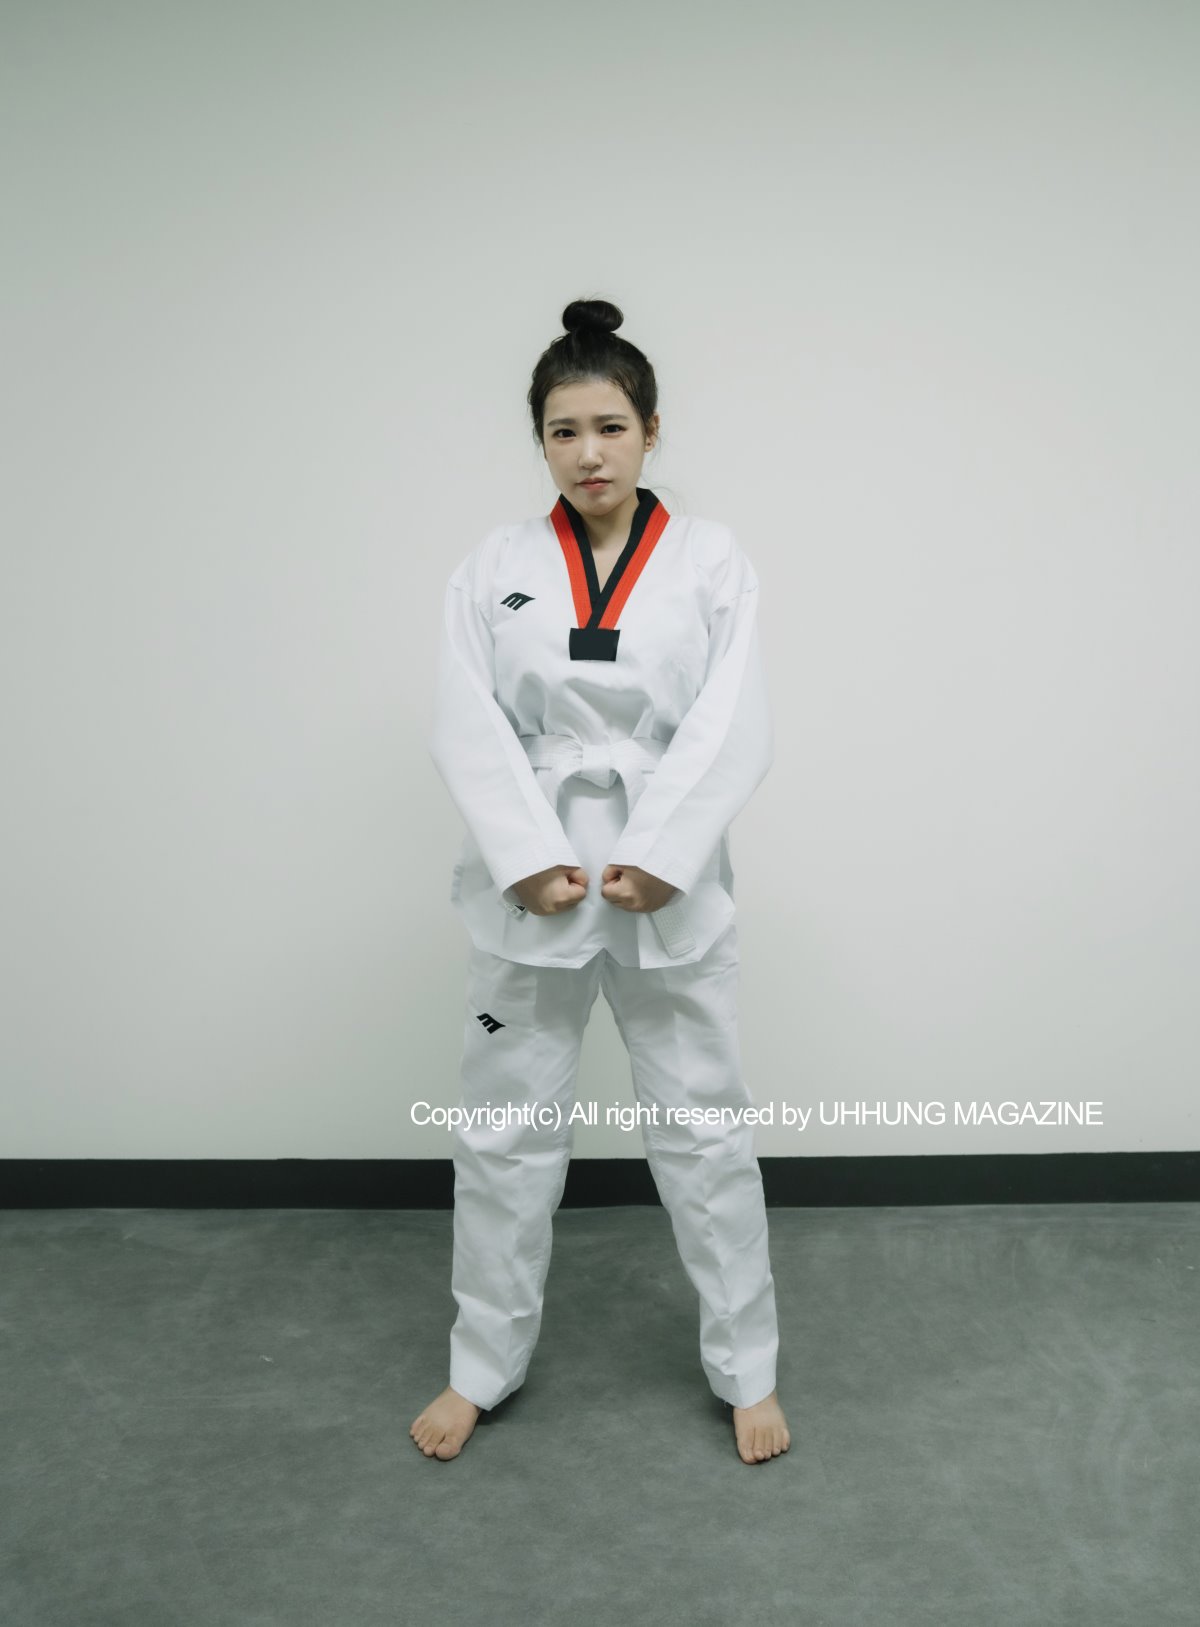 UHHUNG MAGAZINE Jenn Vol 1 Taekwondo Part1 0032 2515651605.jpg